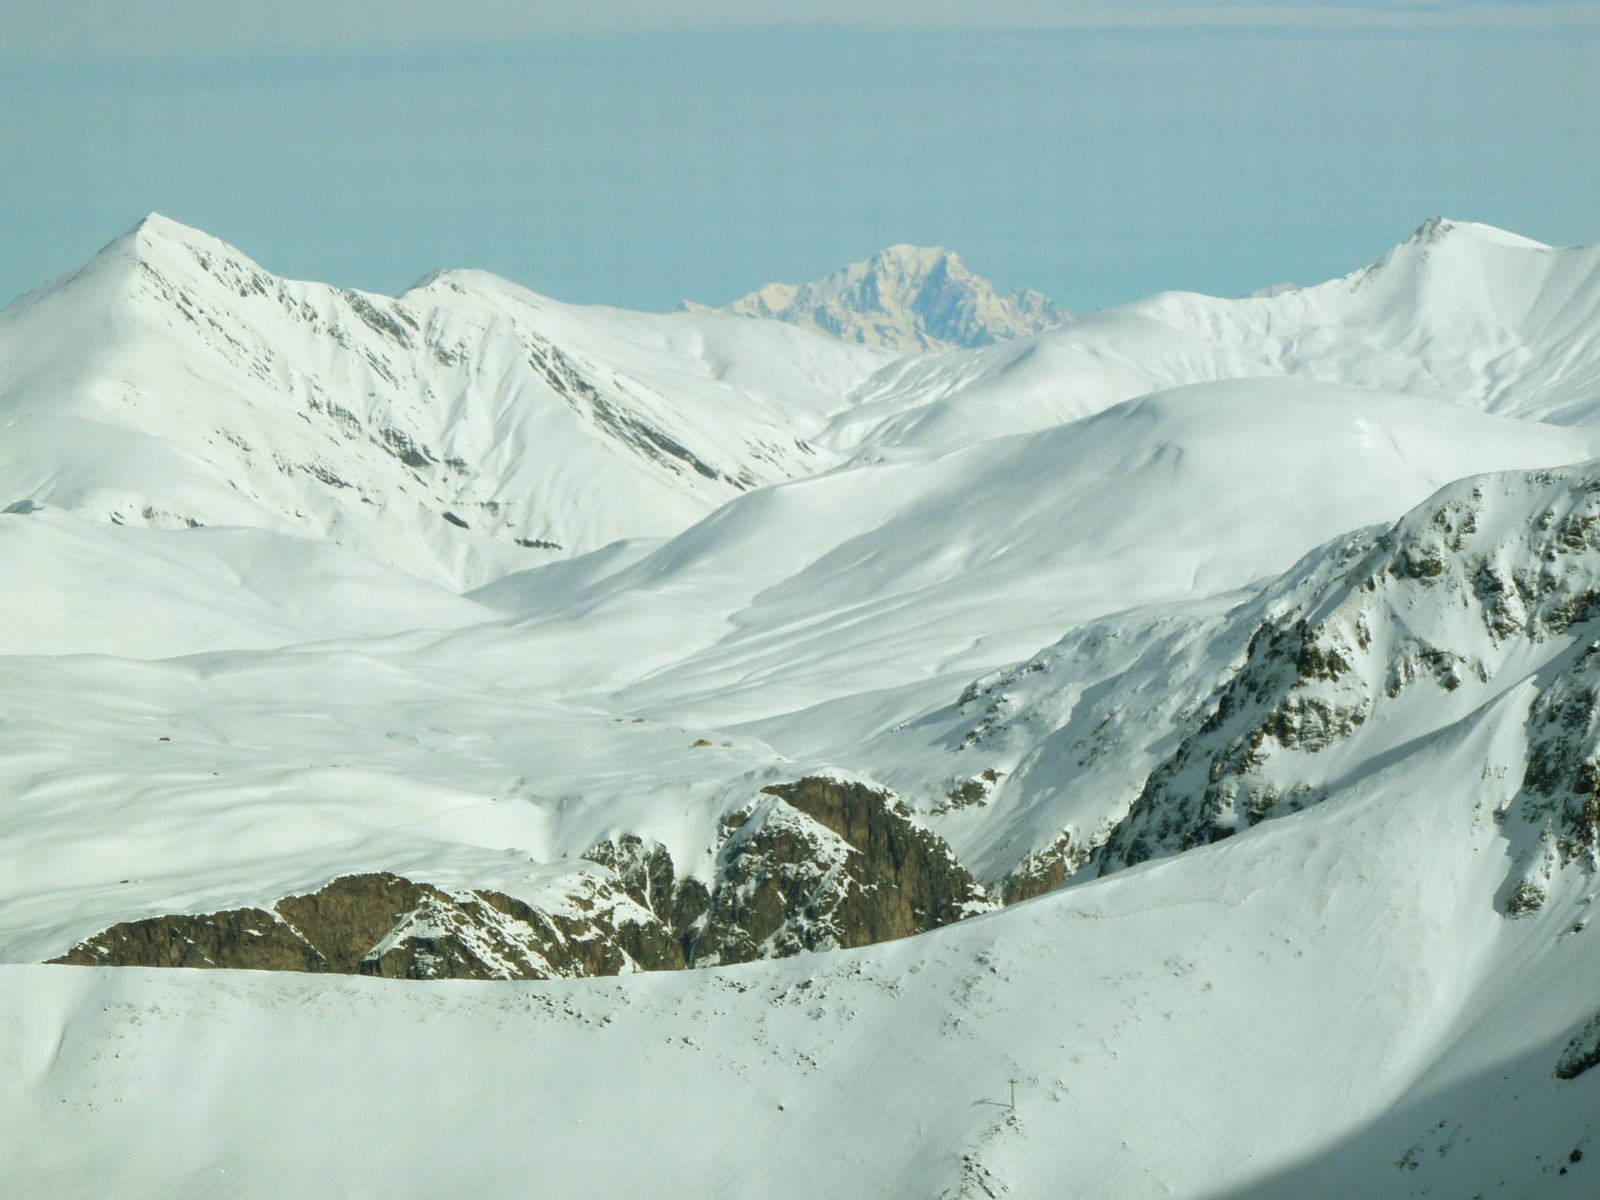 A hegyek között kikandikáló Mont Blanc csúcs